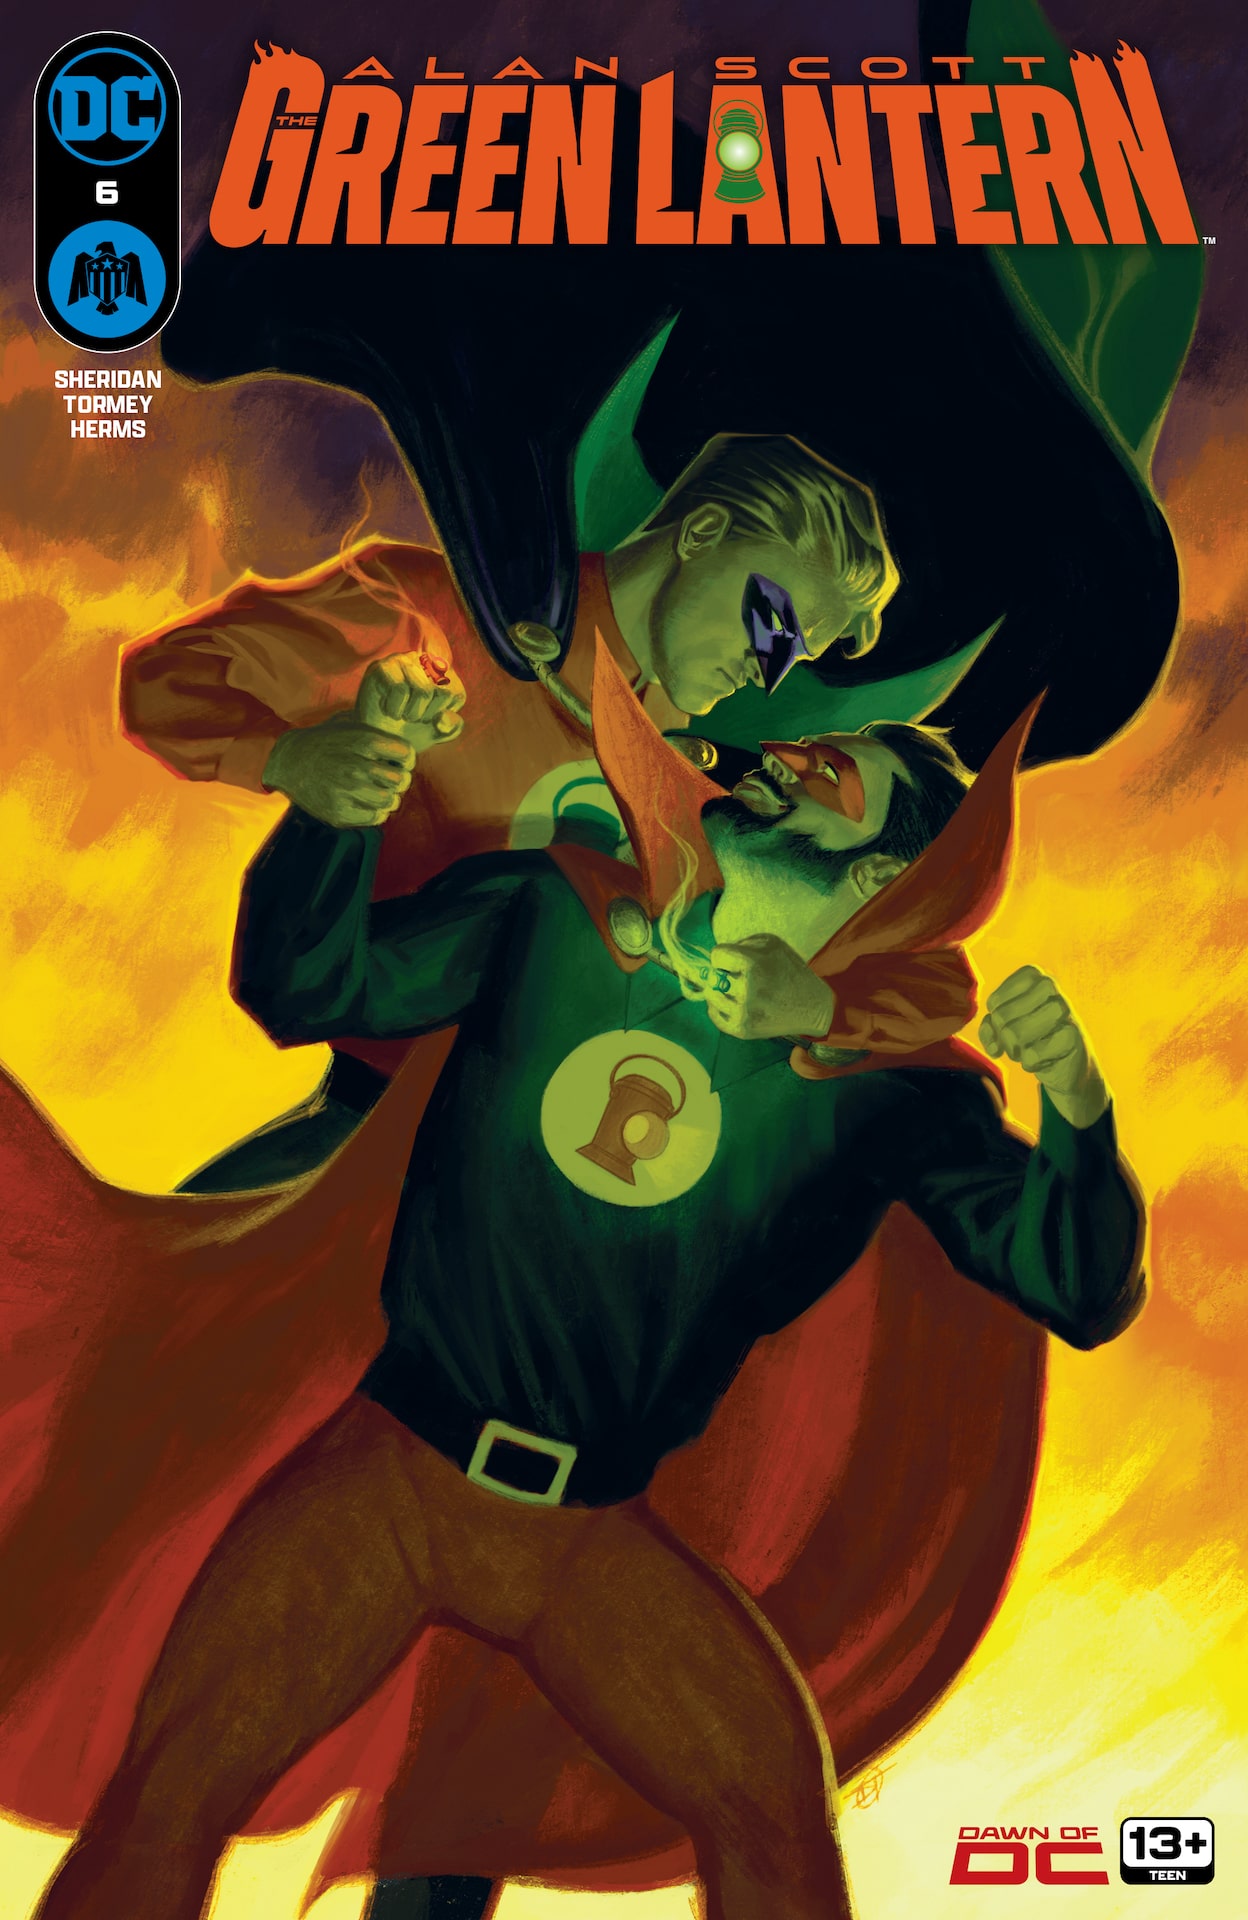 DC Preview: Alan Scott: The Green Lantern #6